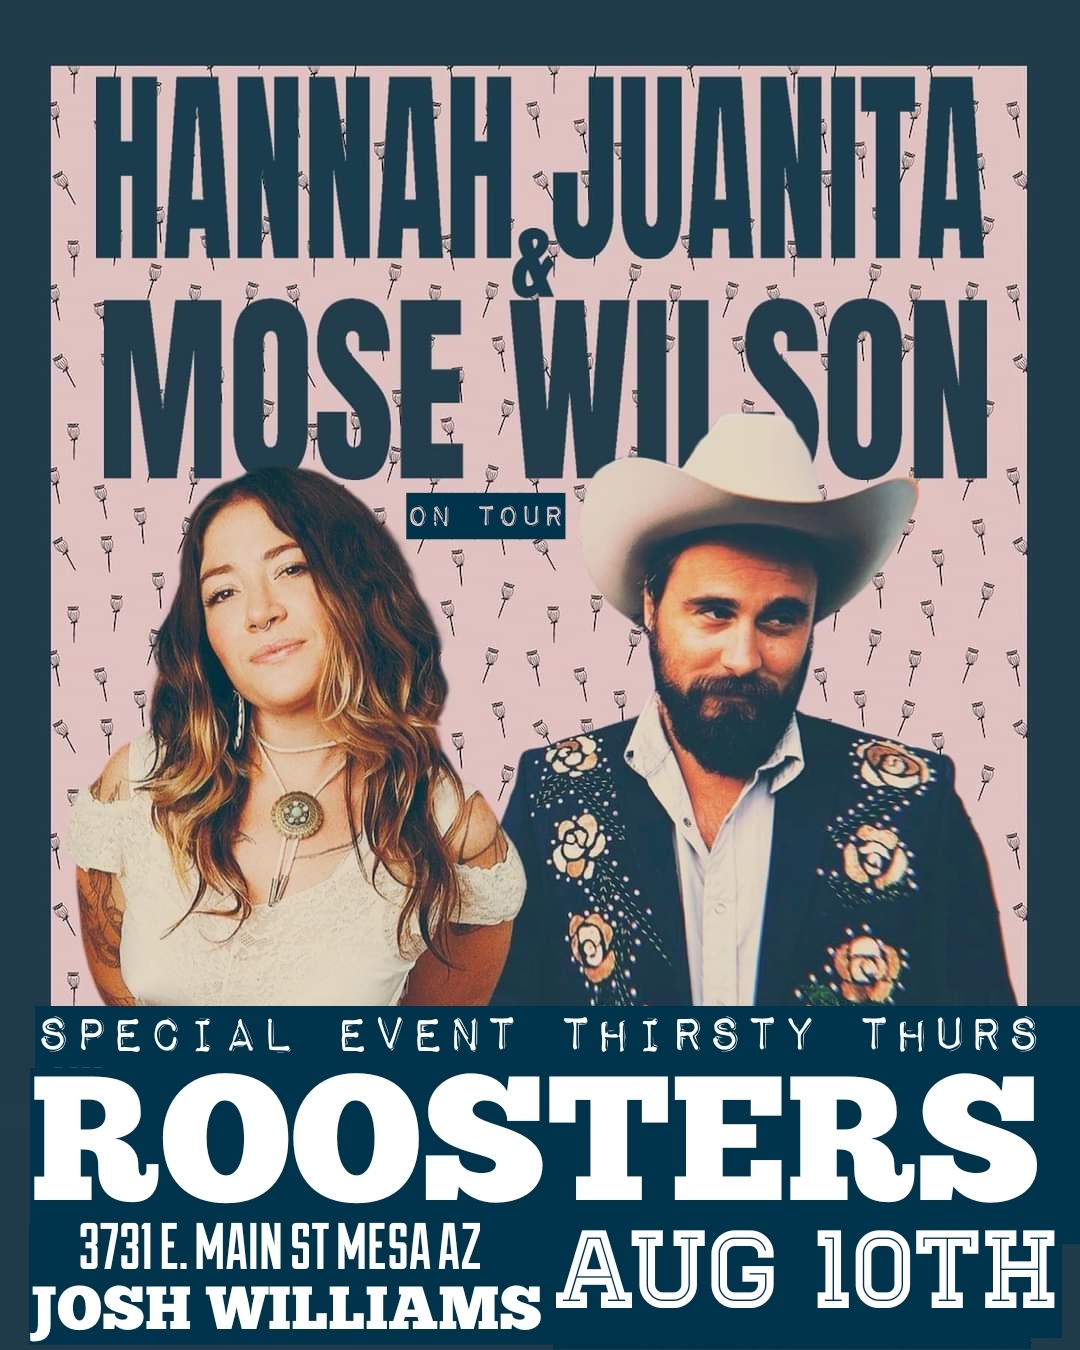 Hannah Juanita & Moses Wilson – Live at Roosters